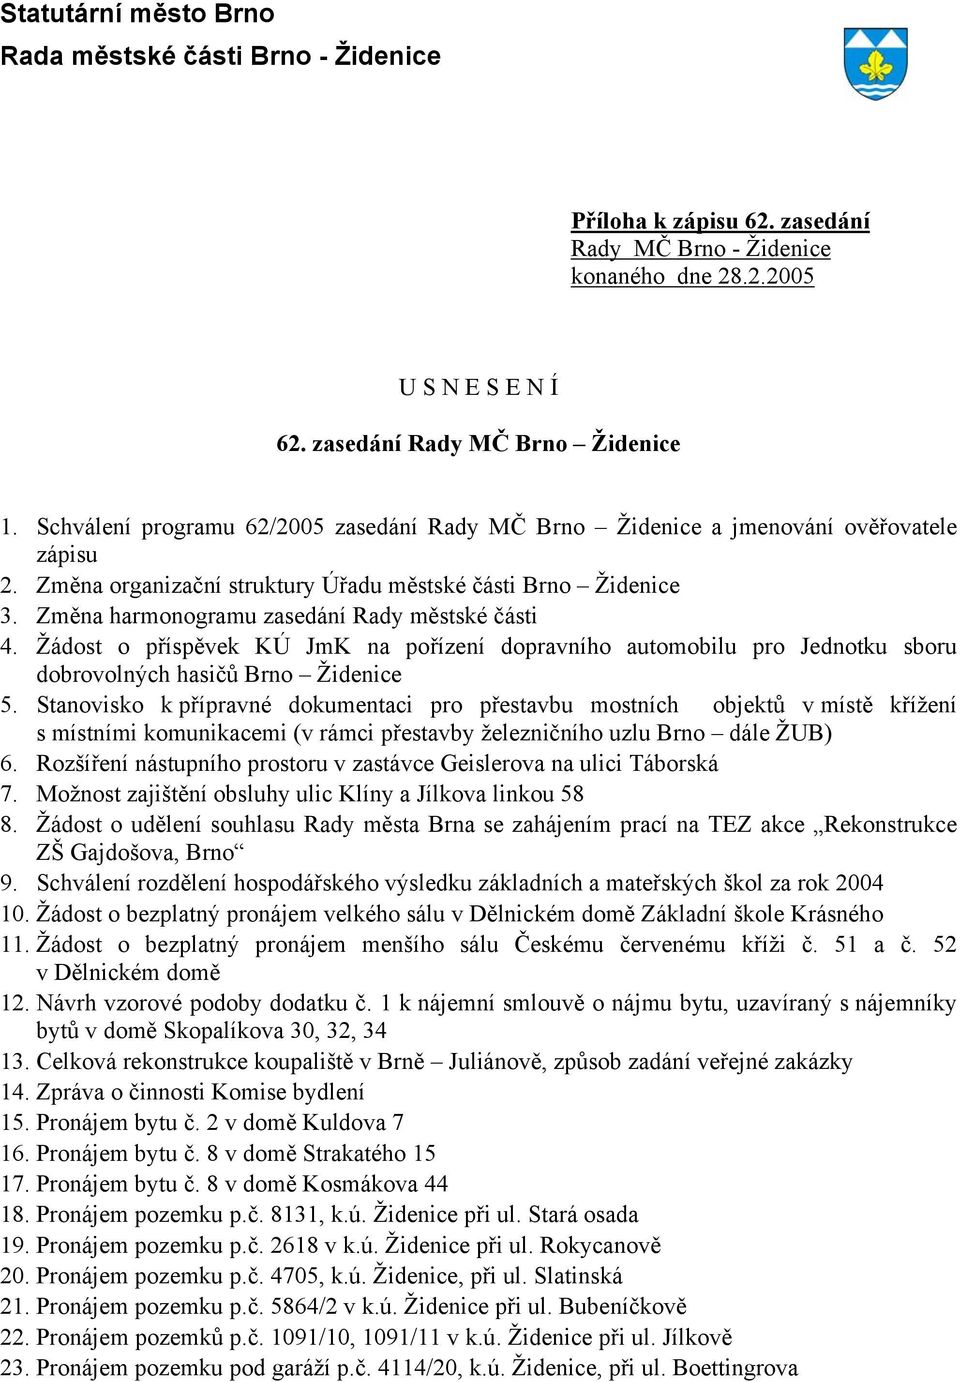 Změna harmonogramu zasedání Rady městské části 4. Žádost o příspěvek KÚ JmK na pořízení dopravního automobilu pro Jednotku sboru dobrovolných hasičů Brno Židenice 5.